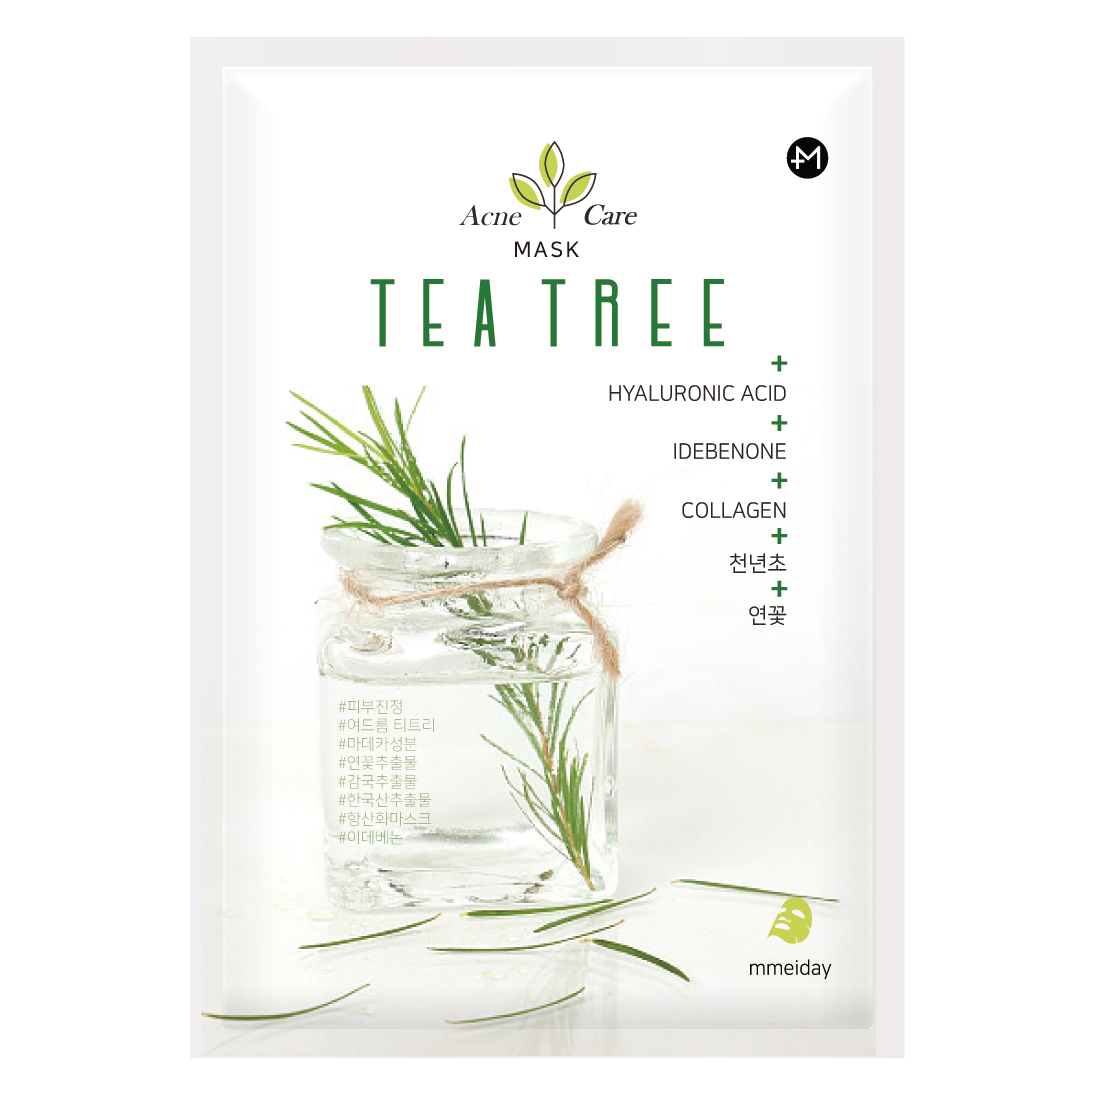 Tea tree Acne care Mask